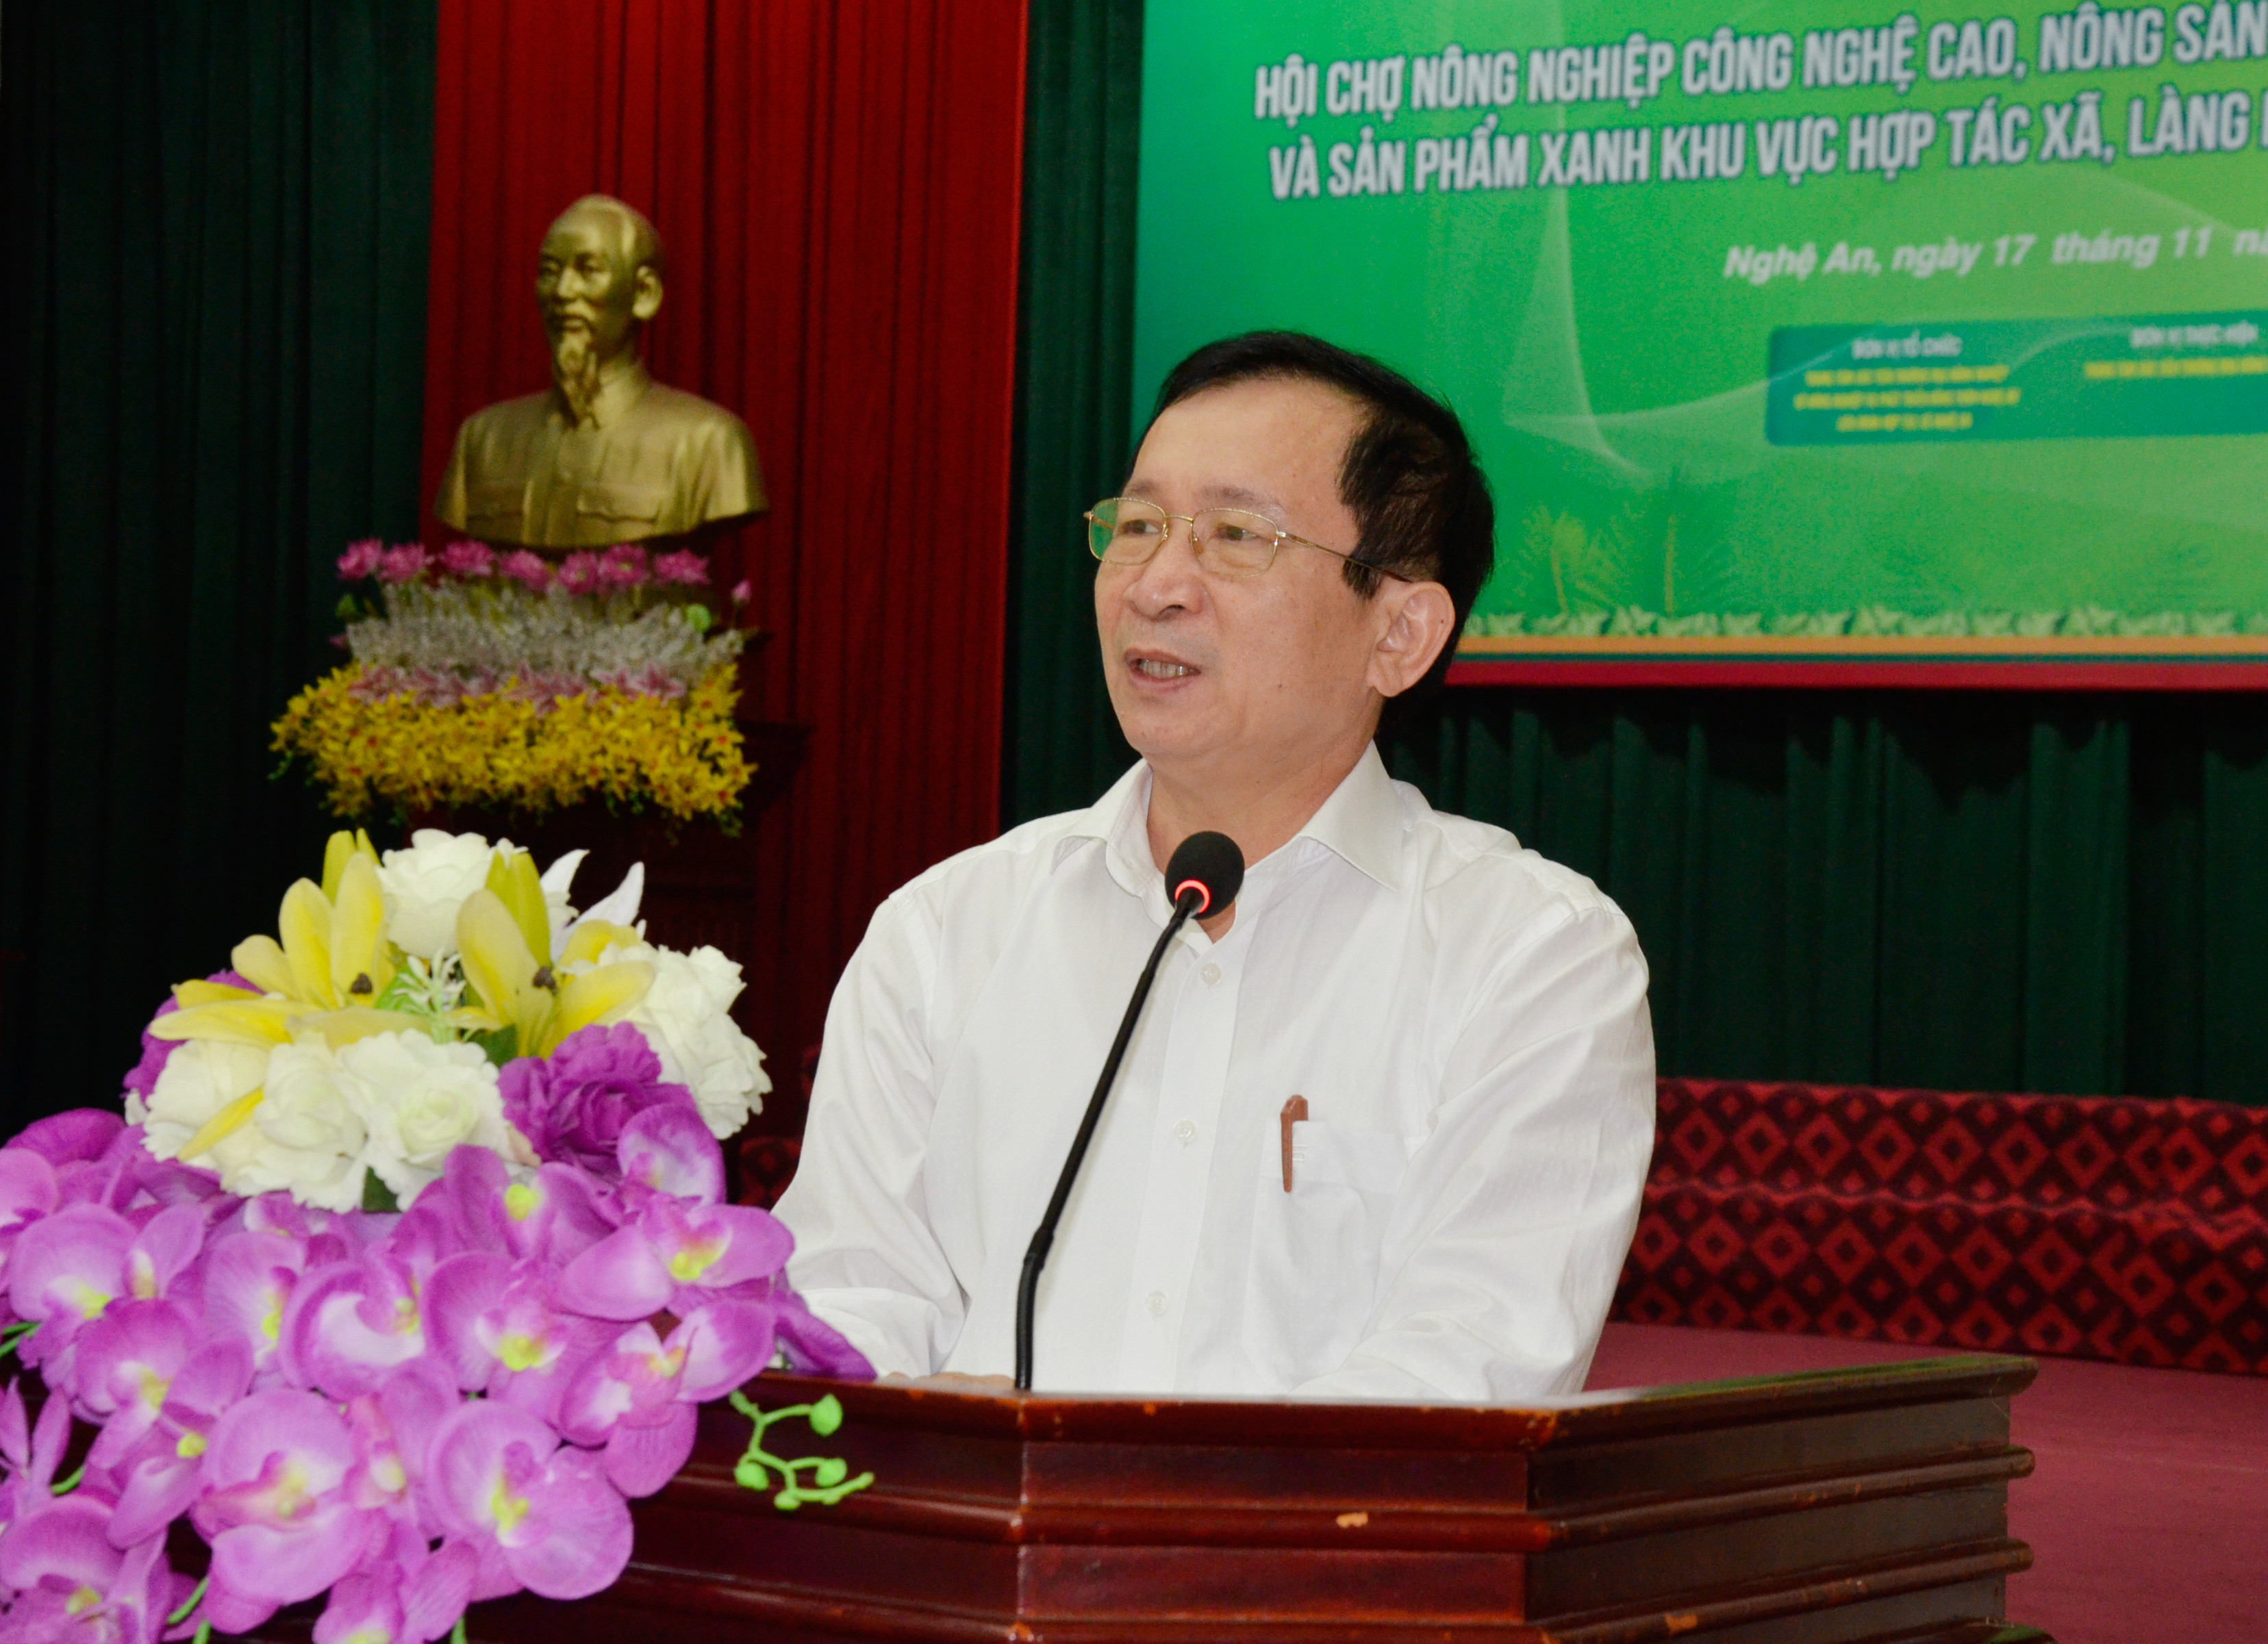 Phó Chủ tịch UBND tỉnh Đinh Viết Hồng phát biểu tại cuộc họp báo. Ảnh Thanh Lê